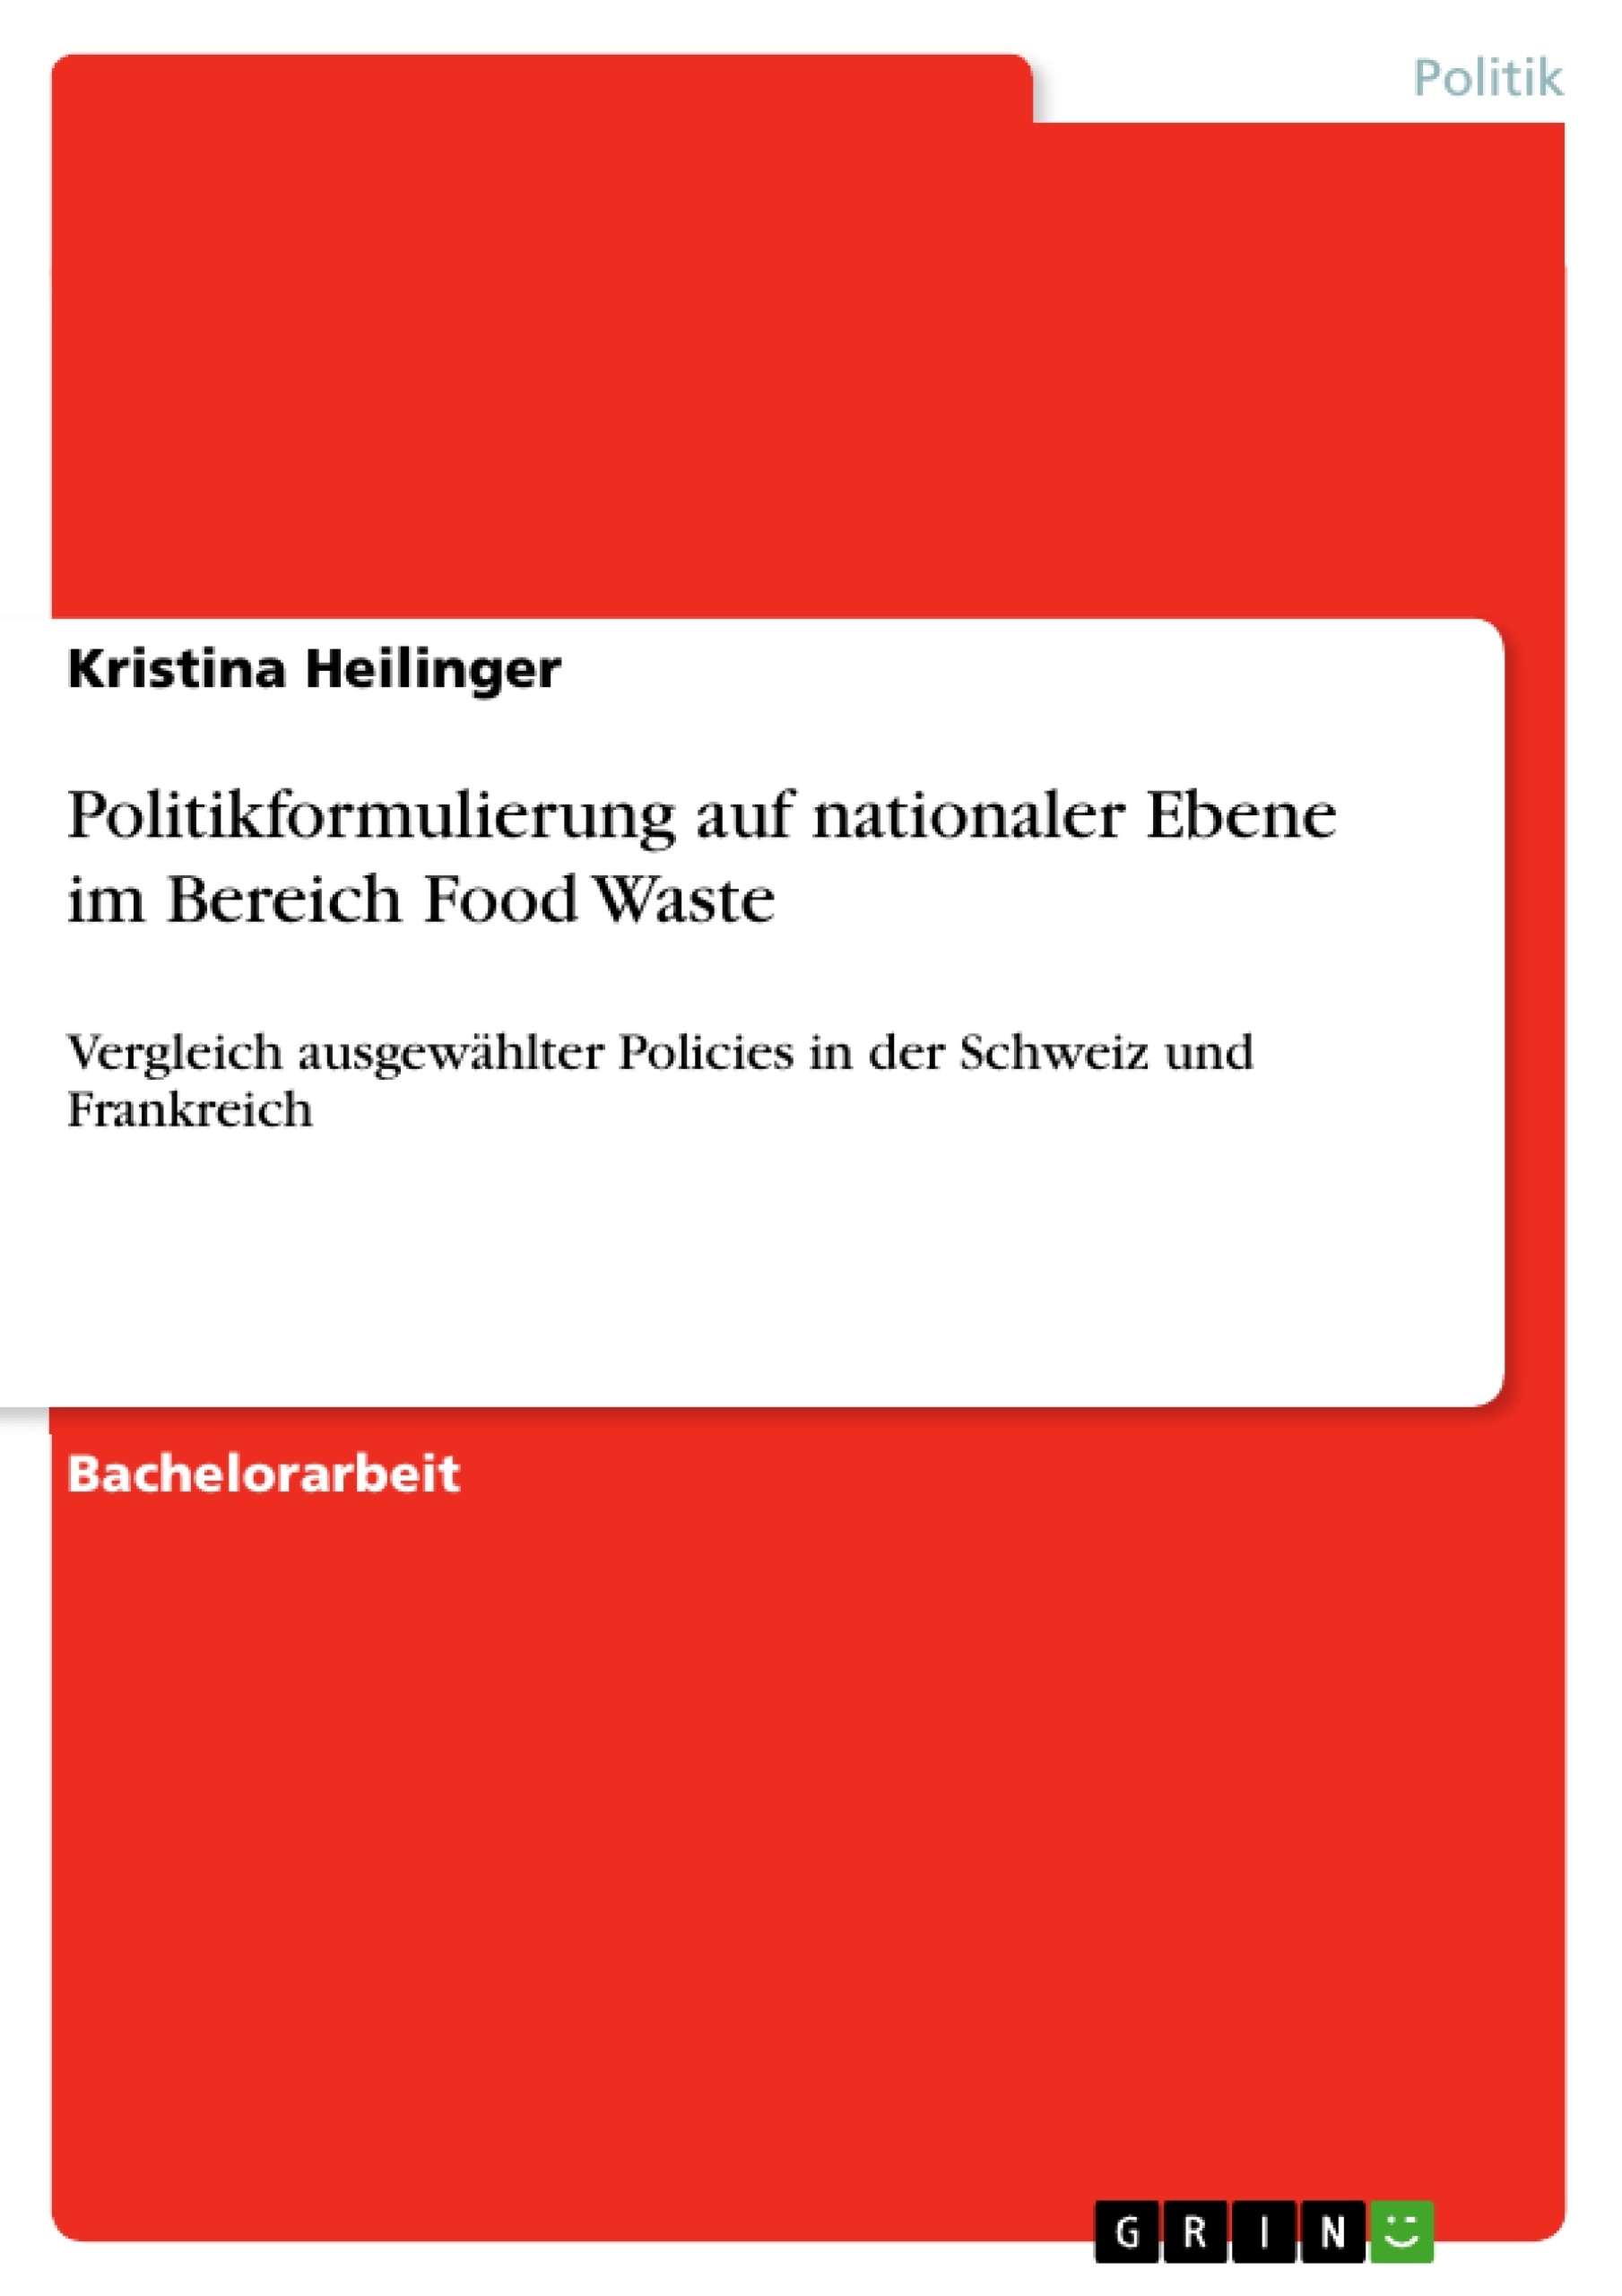 Título: Politikformulierung auf nationaler Ebene im Bereich Food Waste